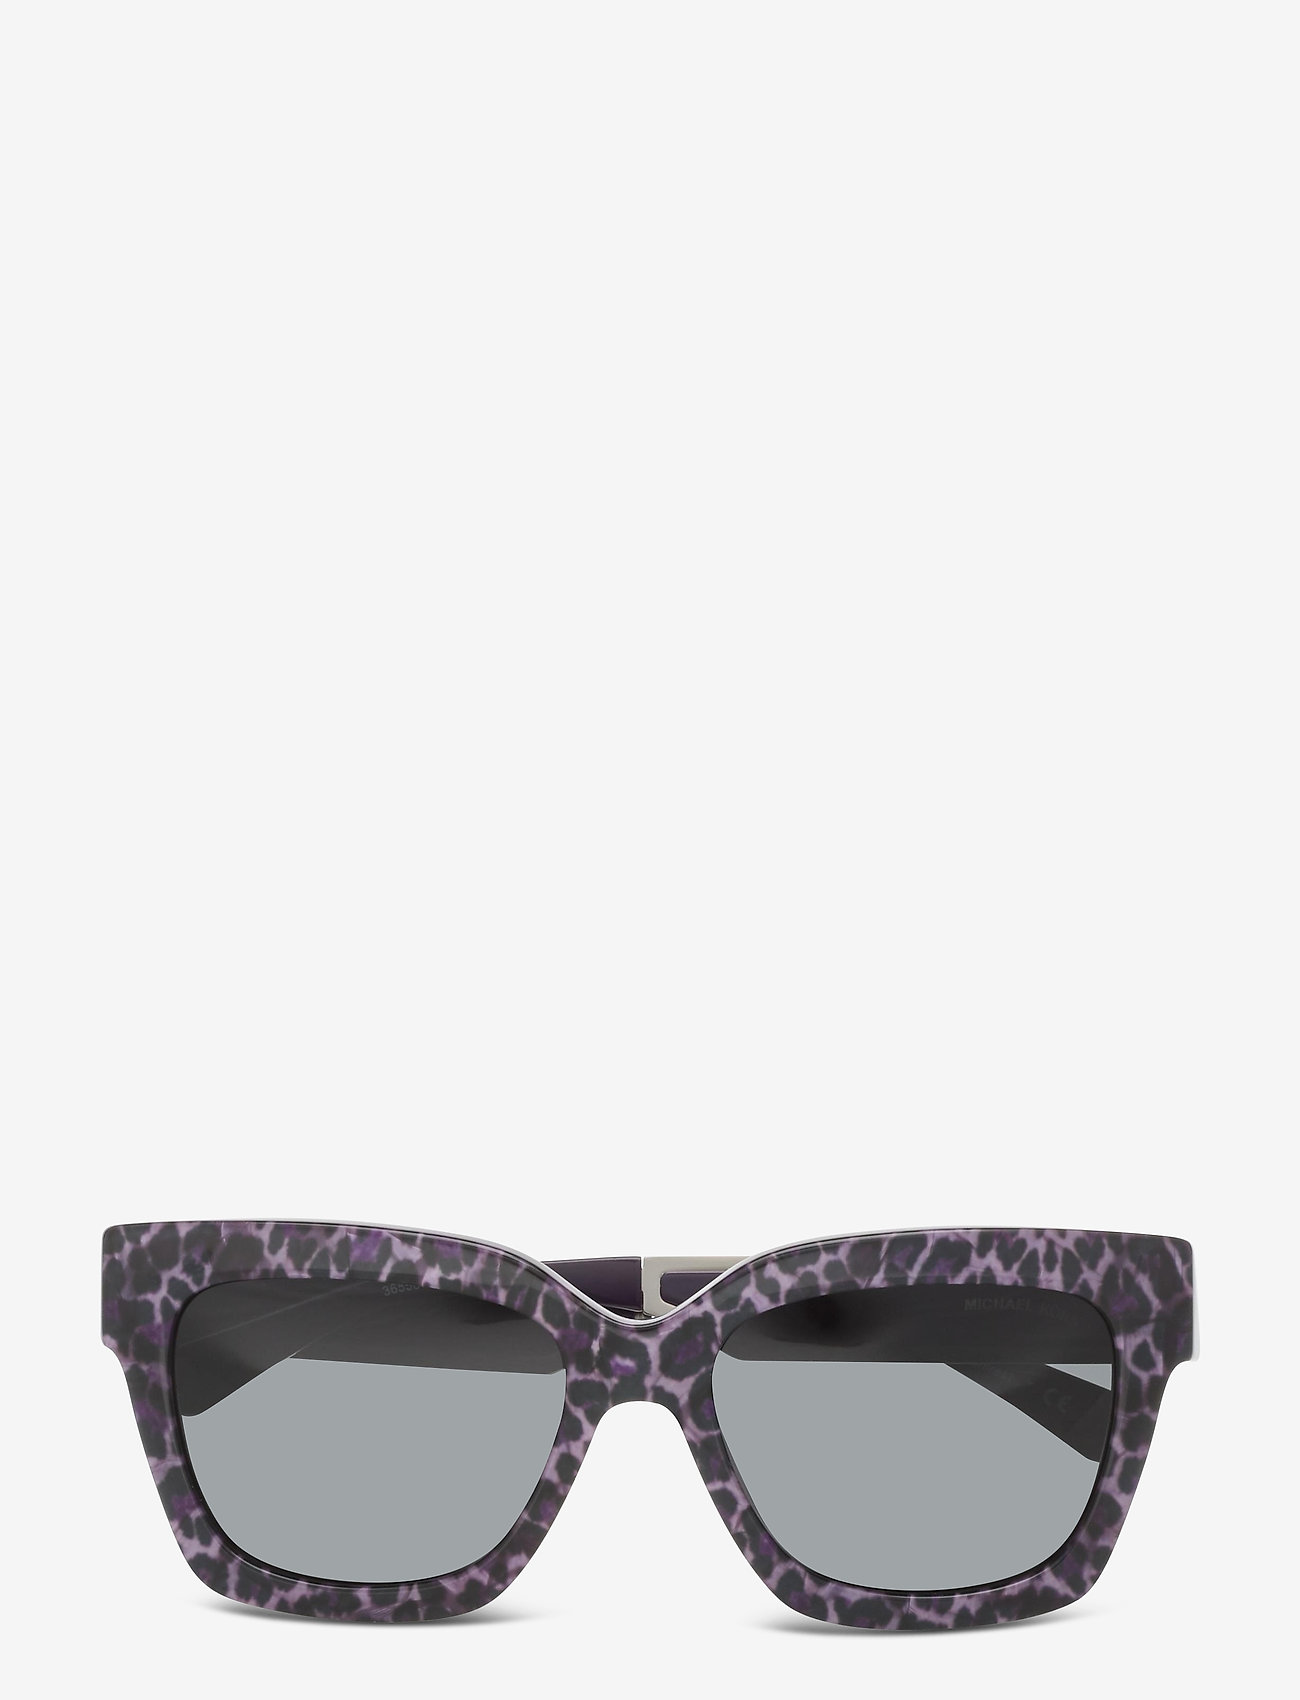 Michael Kors Sunglasses - D-shaped 